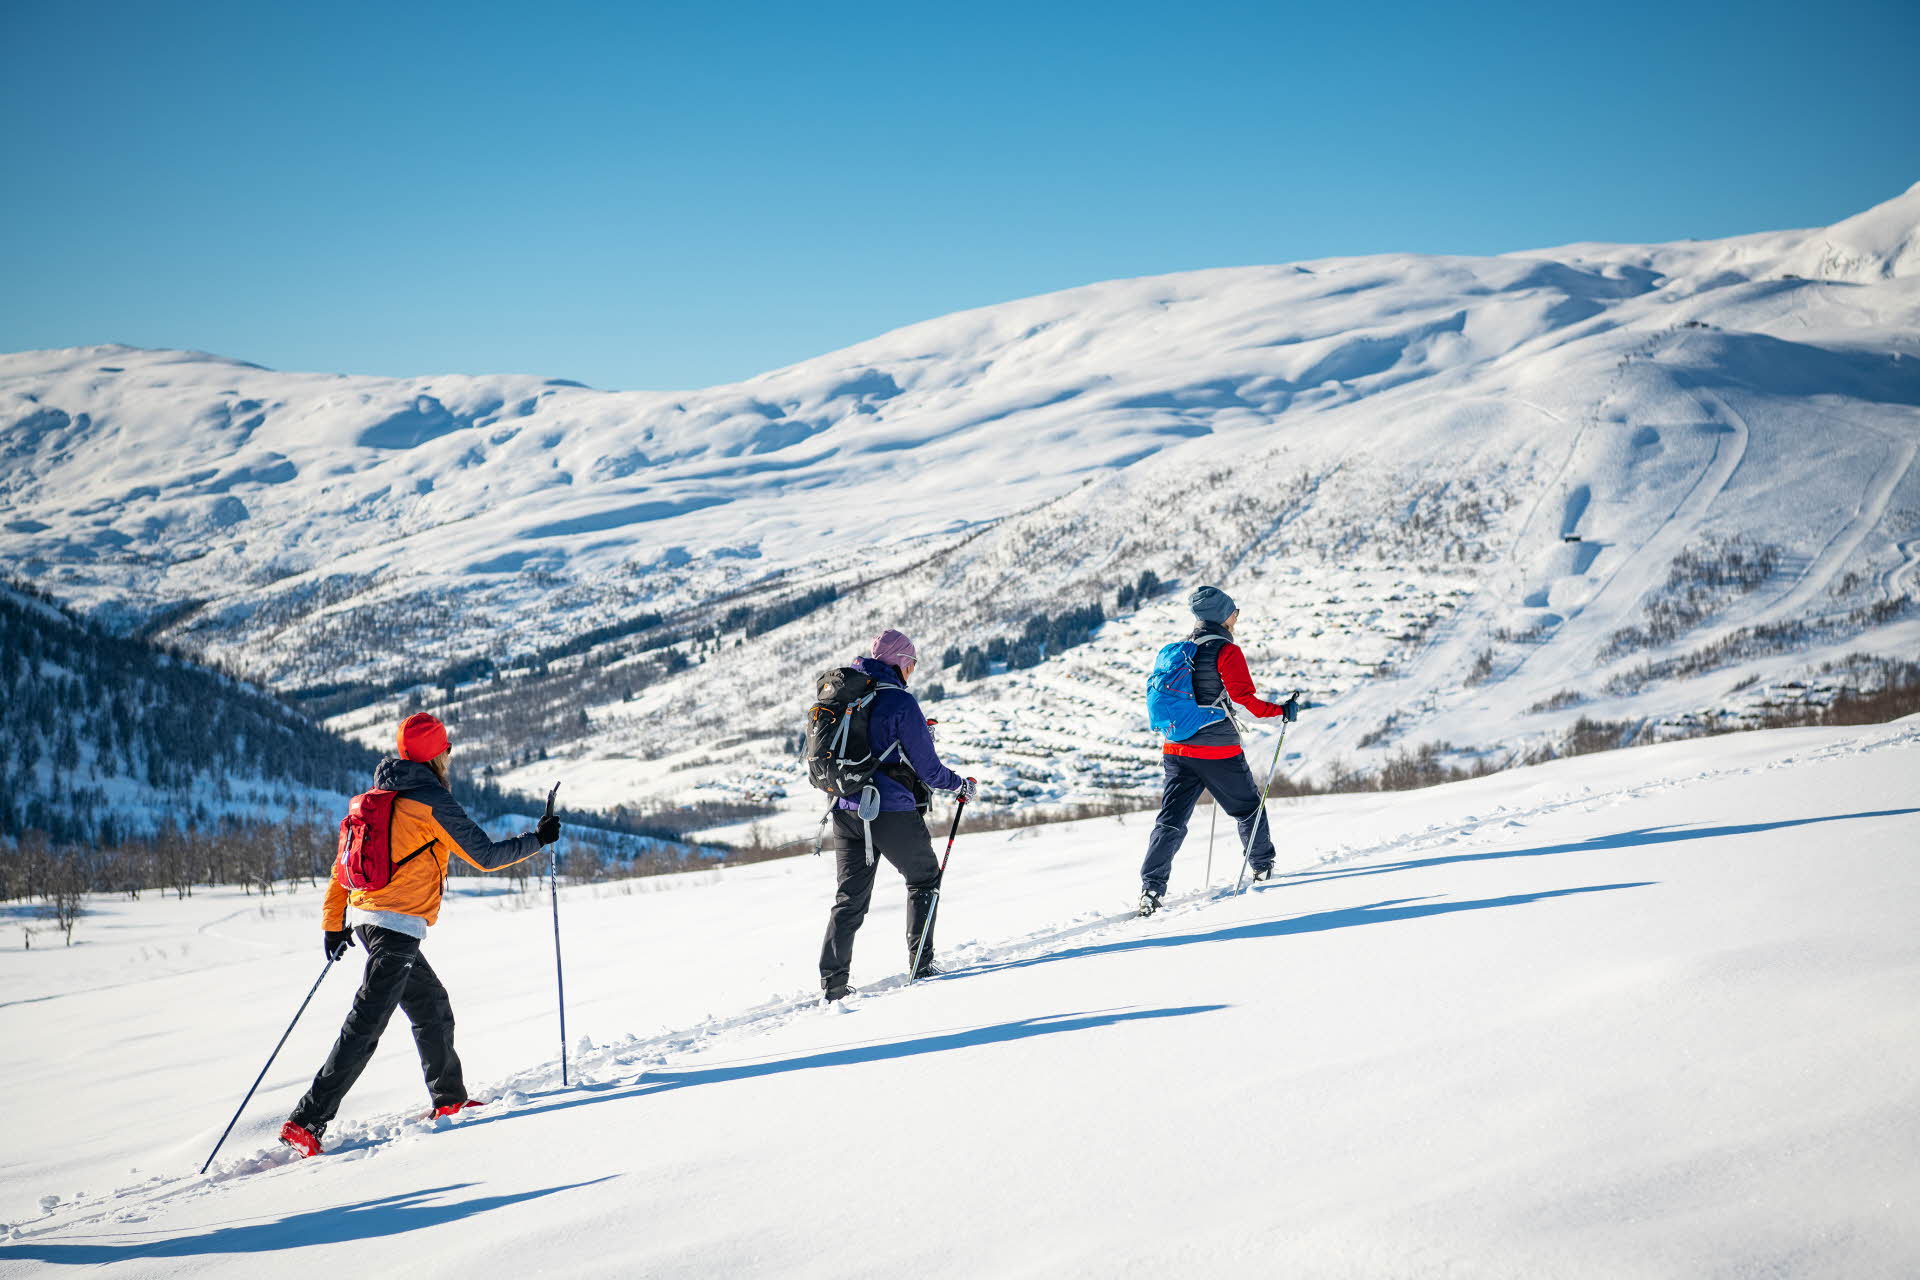 Trois personnes font du ski hors-piste l’une derrière l’autre. On voit la station de ski de Myrkdalen à l’arrière-plan.